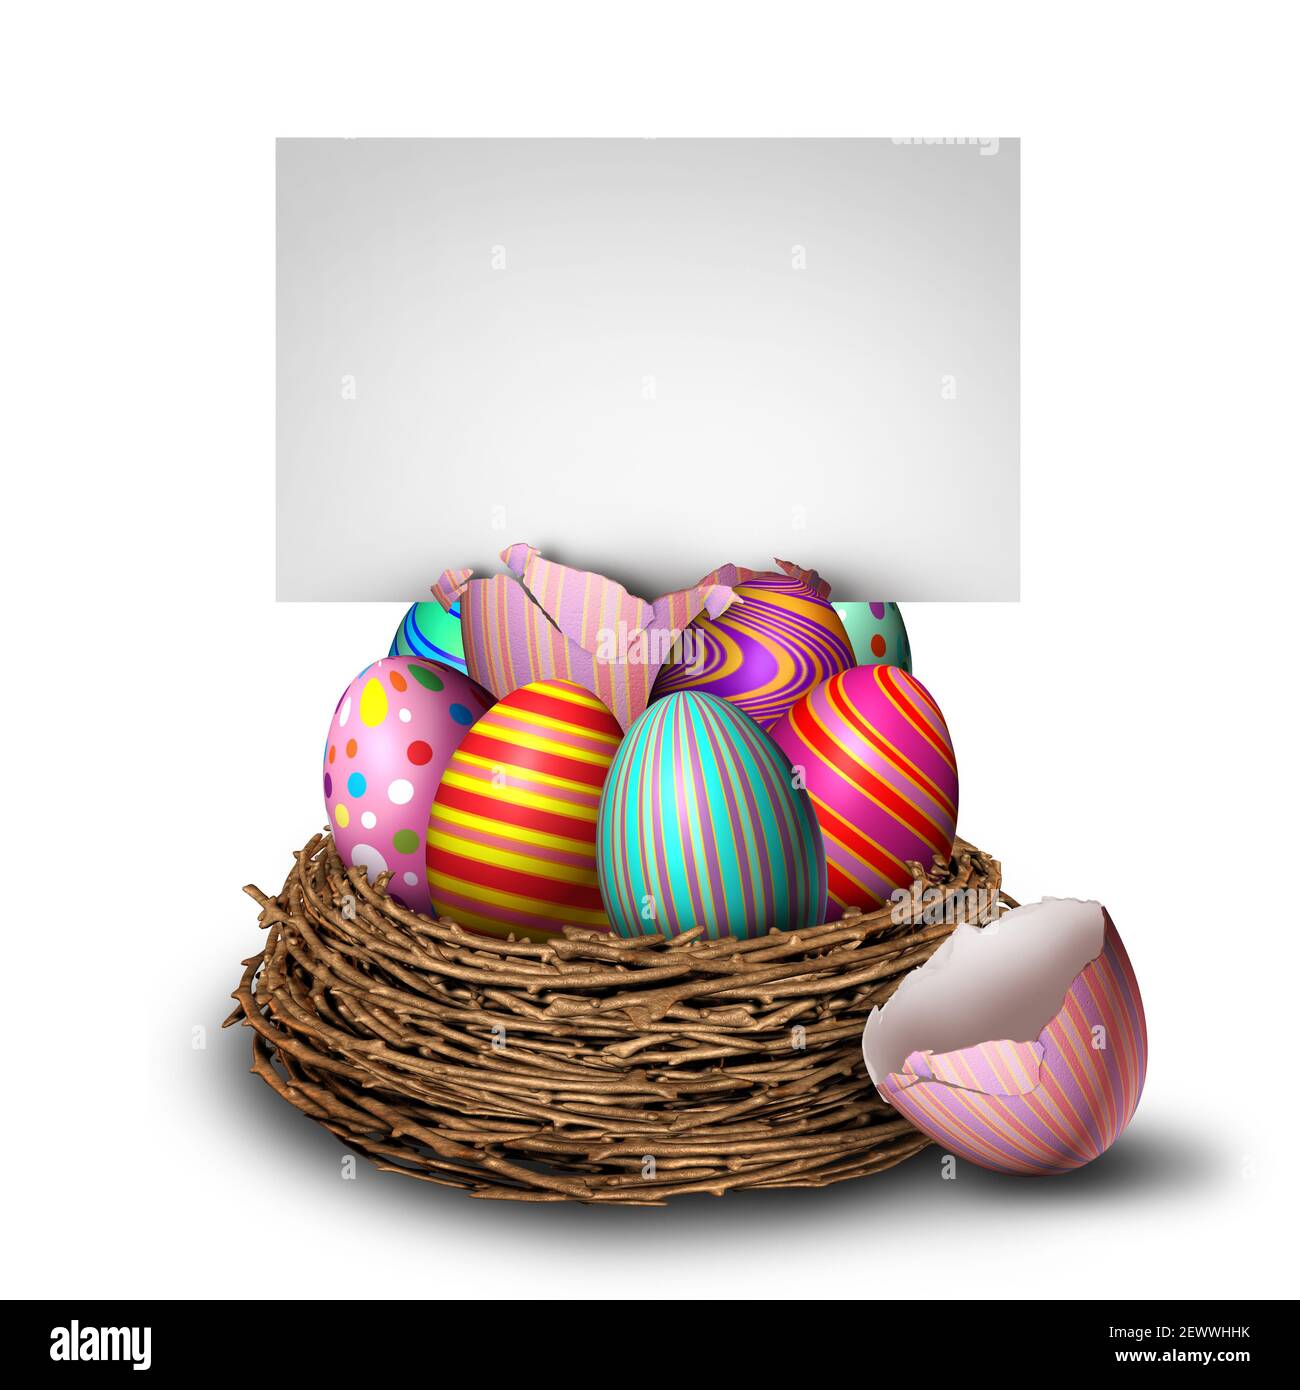 Pasqua banner stagione primavera festa con un pulcino giallo seduto su un mucchio di uova decorate dipinte in un nido come un simbolo festivo. Foto Stock